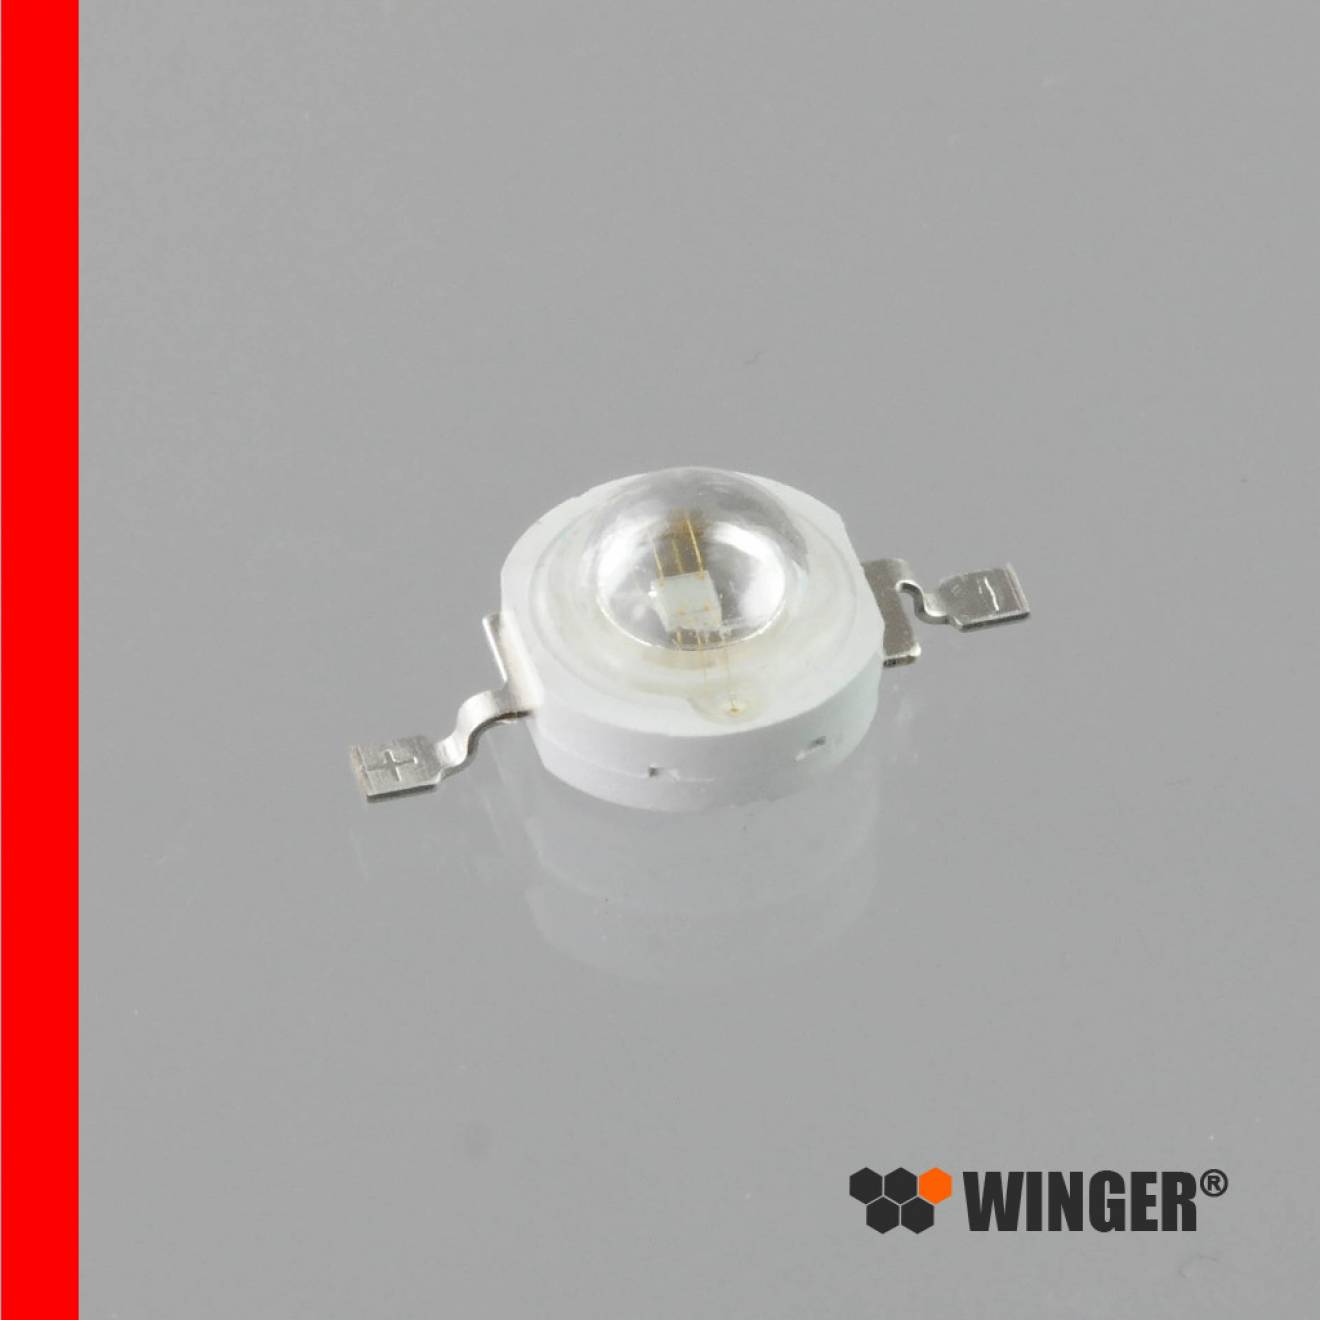 WINGER® WEPRD1-E1 Power LED Emitter rot (625nm) 1W - 55lm